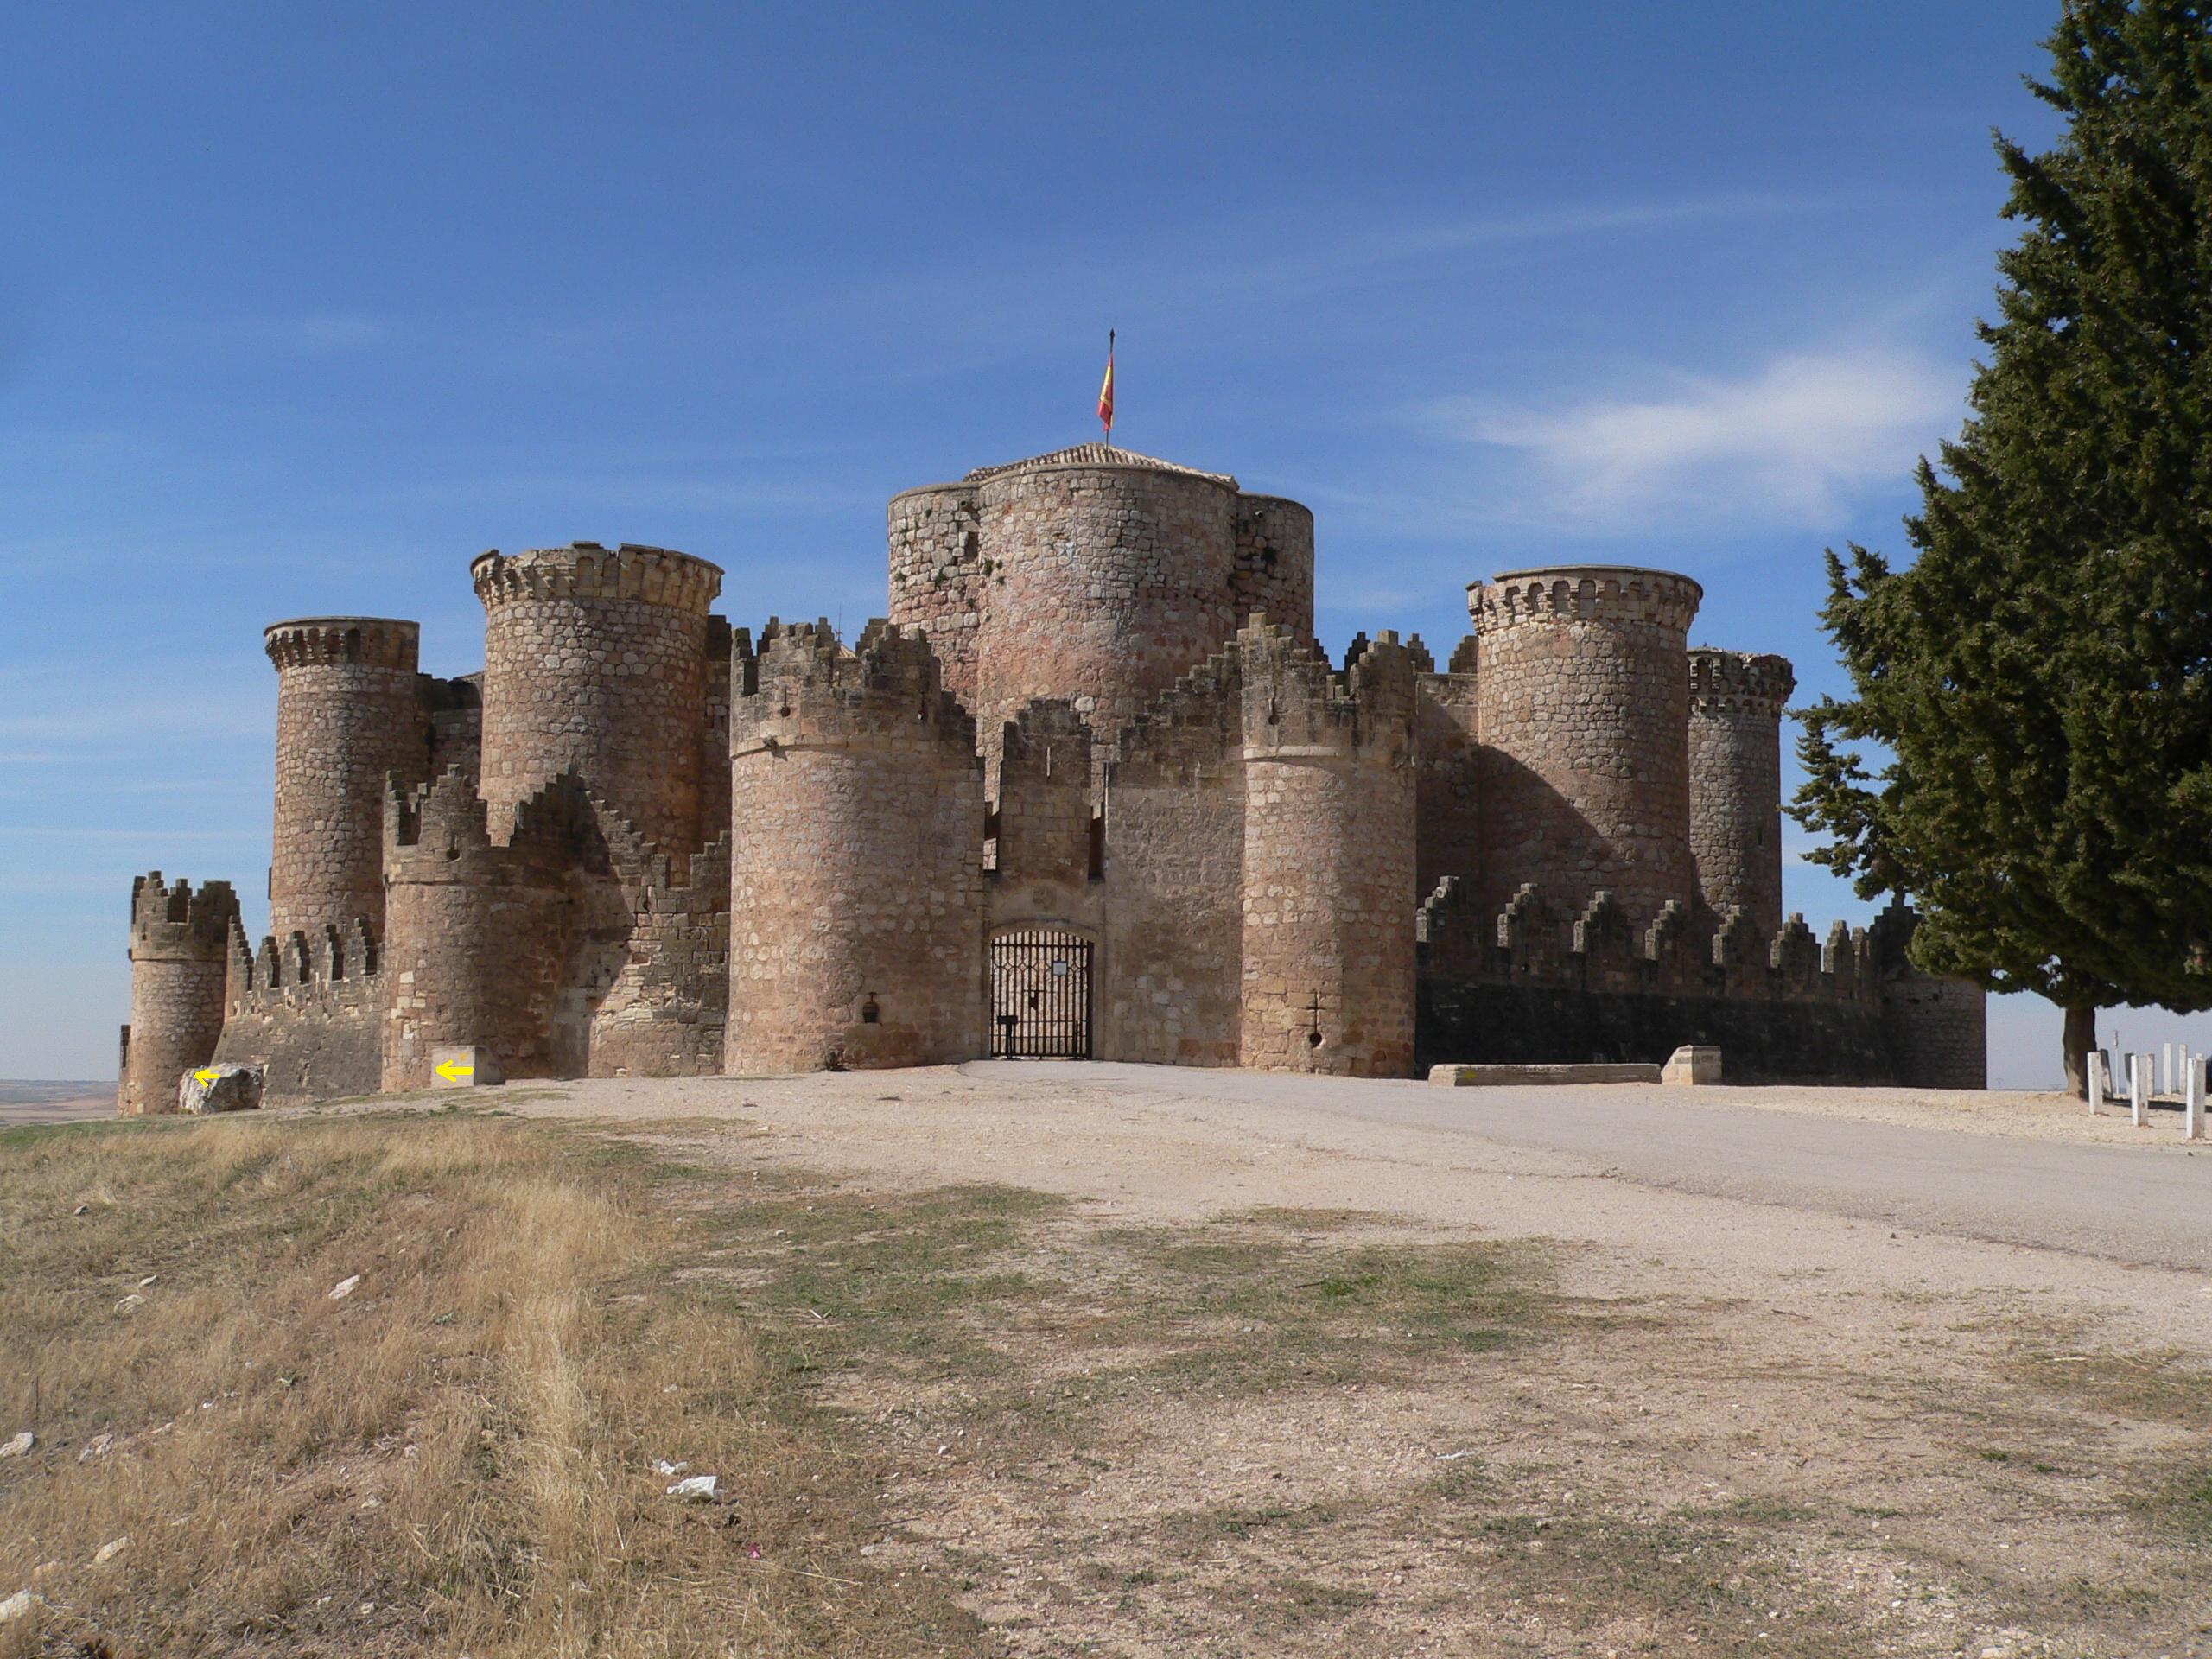 Conocemos el Castillo de Belmonte situado en Cuenca